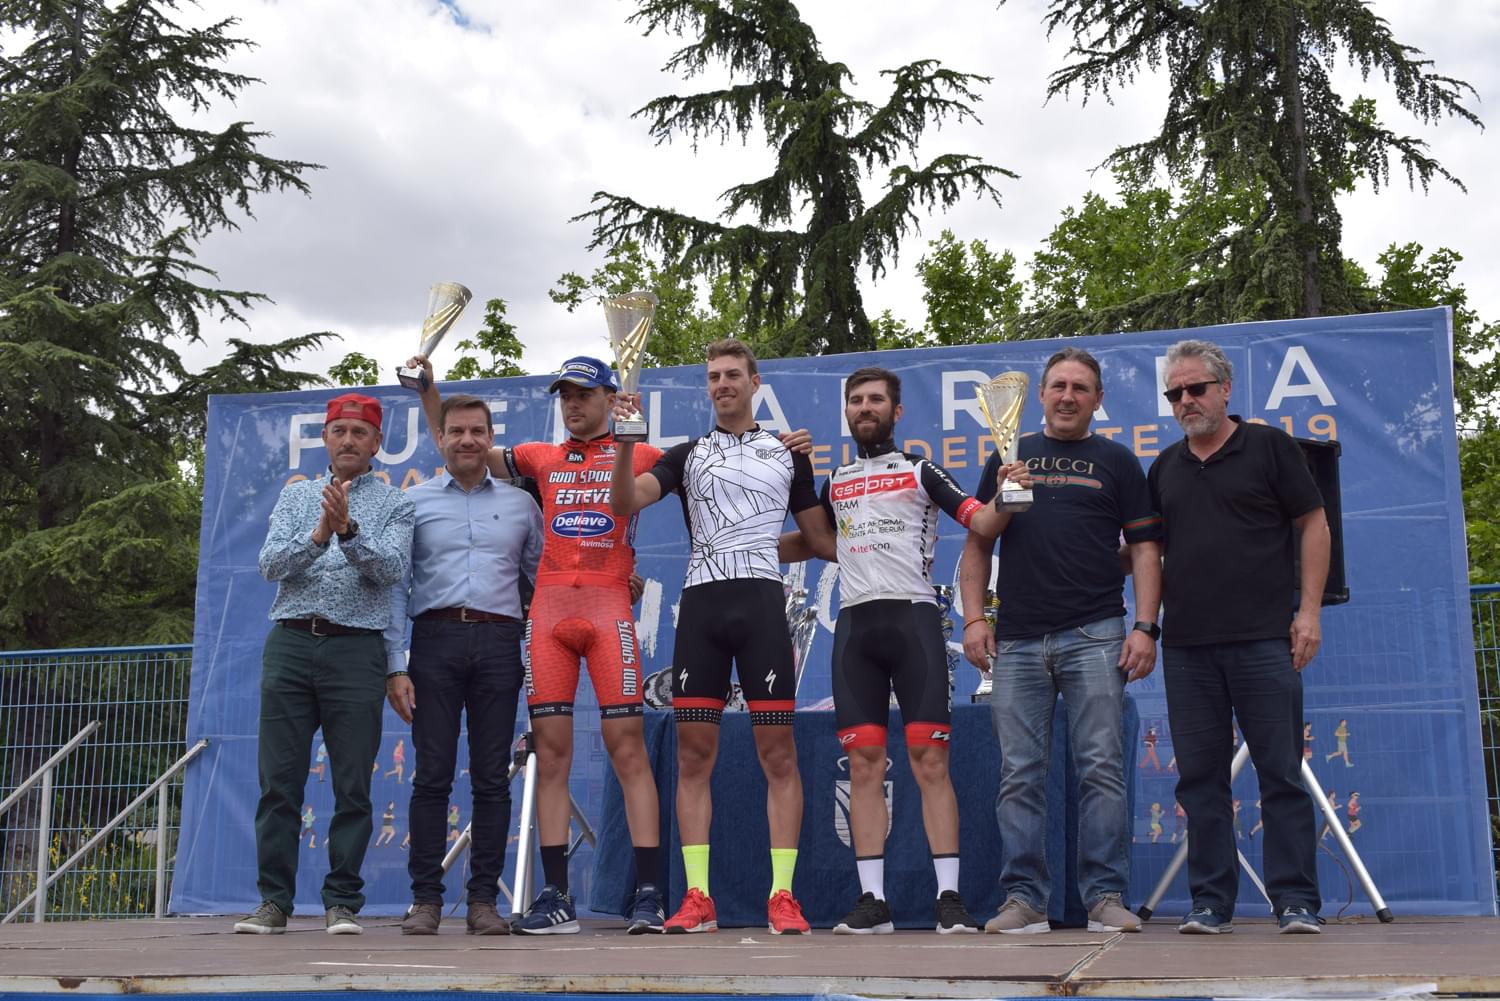 Alberto Bejarano regala al AC Hotels la victoria en el XXXIX Trofeo Peña Ciclista Paloma (ACTUALIZADA)